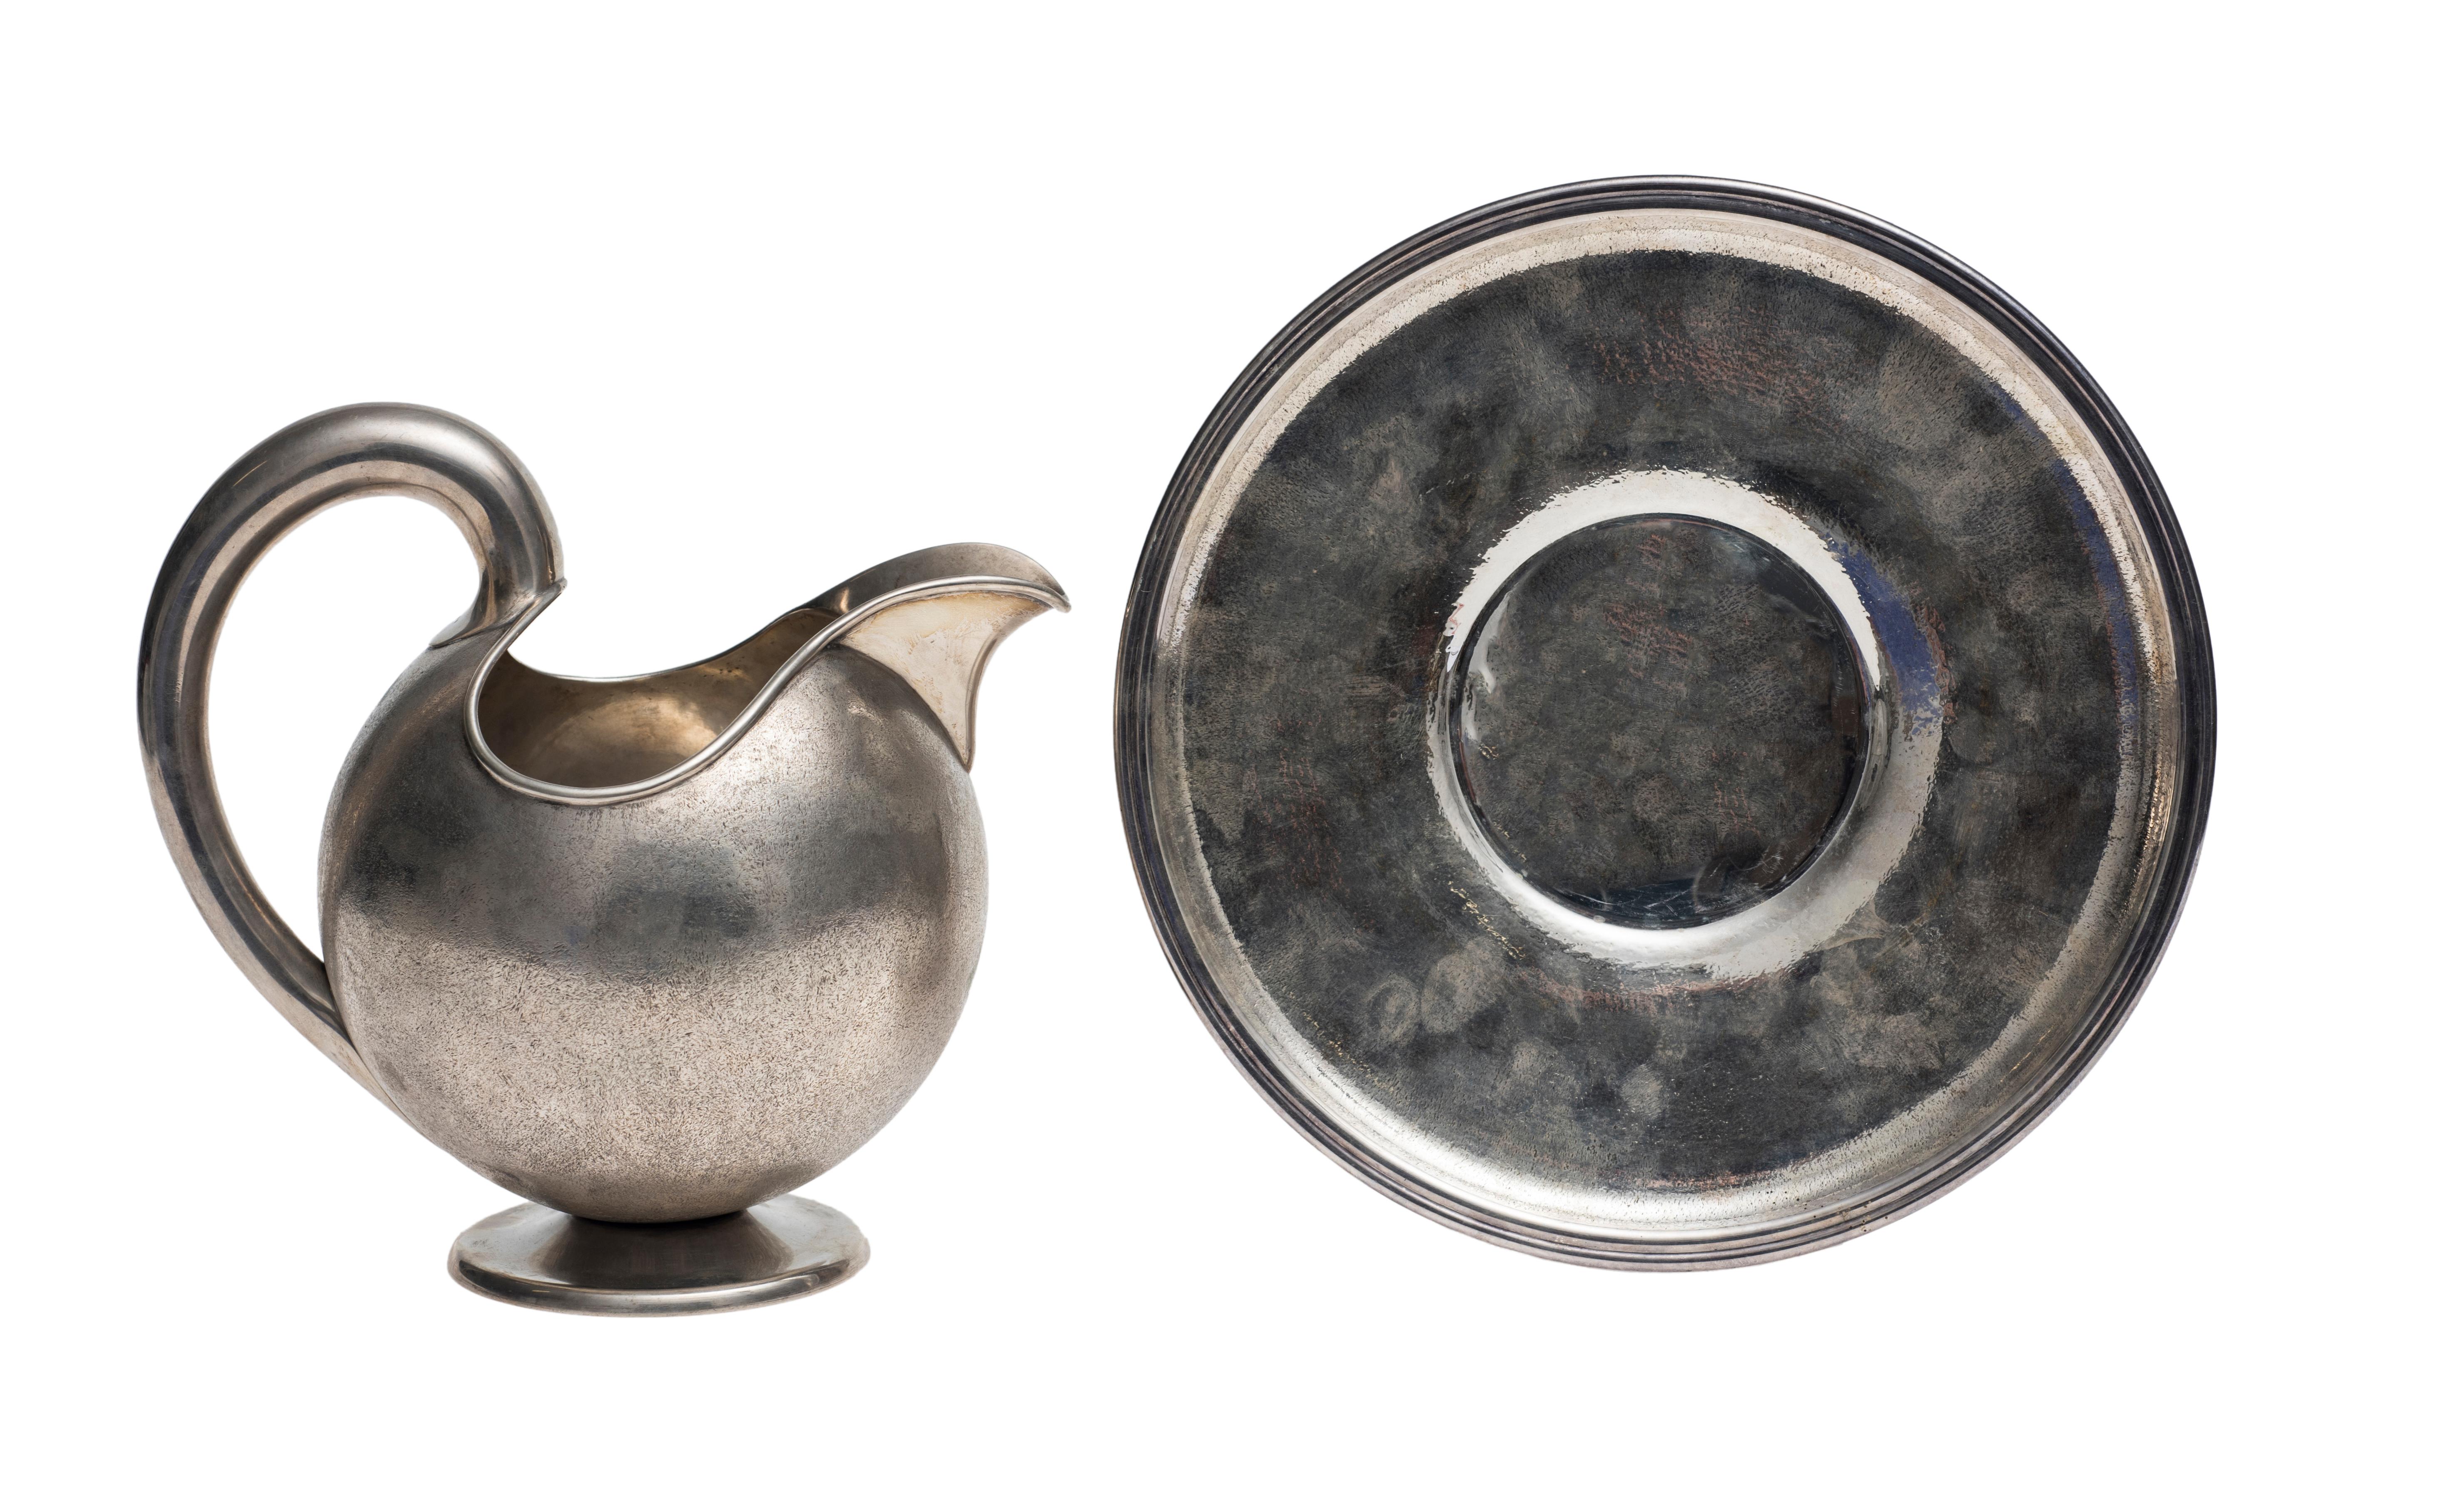 Die Silberkanne mit Untertasse ist ein originelles Dekorationsobjekt von Luigi Genazzi aus dem 20. 

Handgefertigt; sowohl die Kanne als auch die Untertasse sind aus reinem Silber gefertigt. 

Das Markenzeichen von Luigi Genazzi befindet sich auf